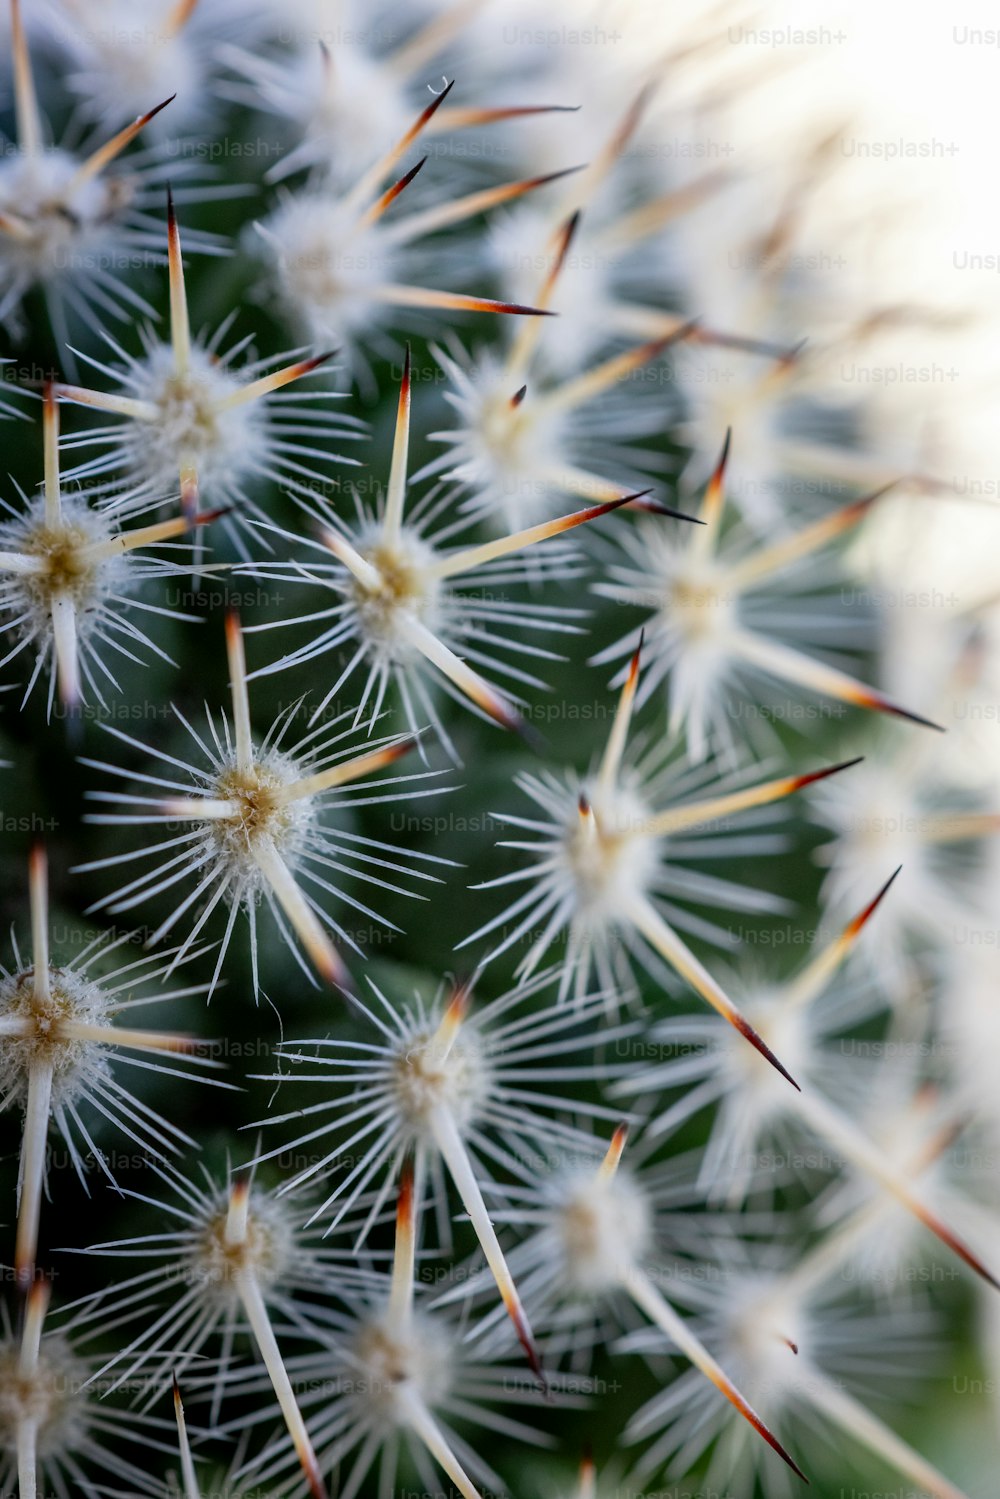 Un primer plano de una planta de cactus con muchas espigas